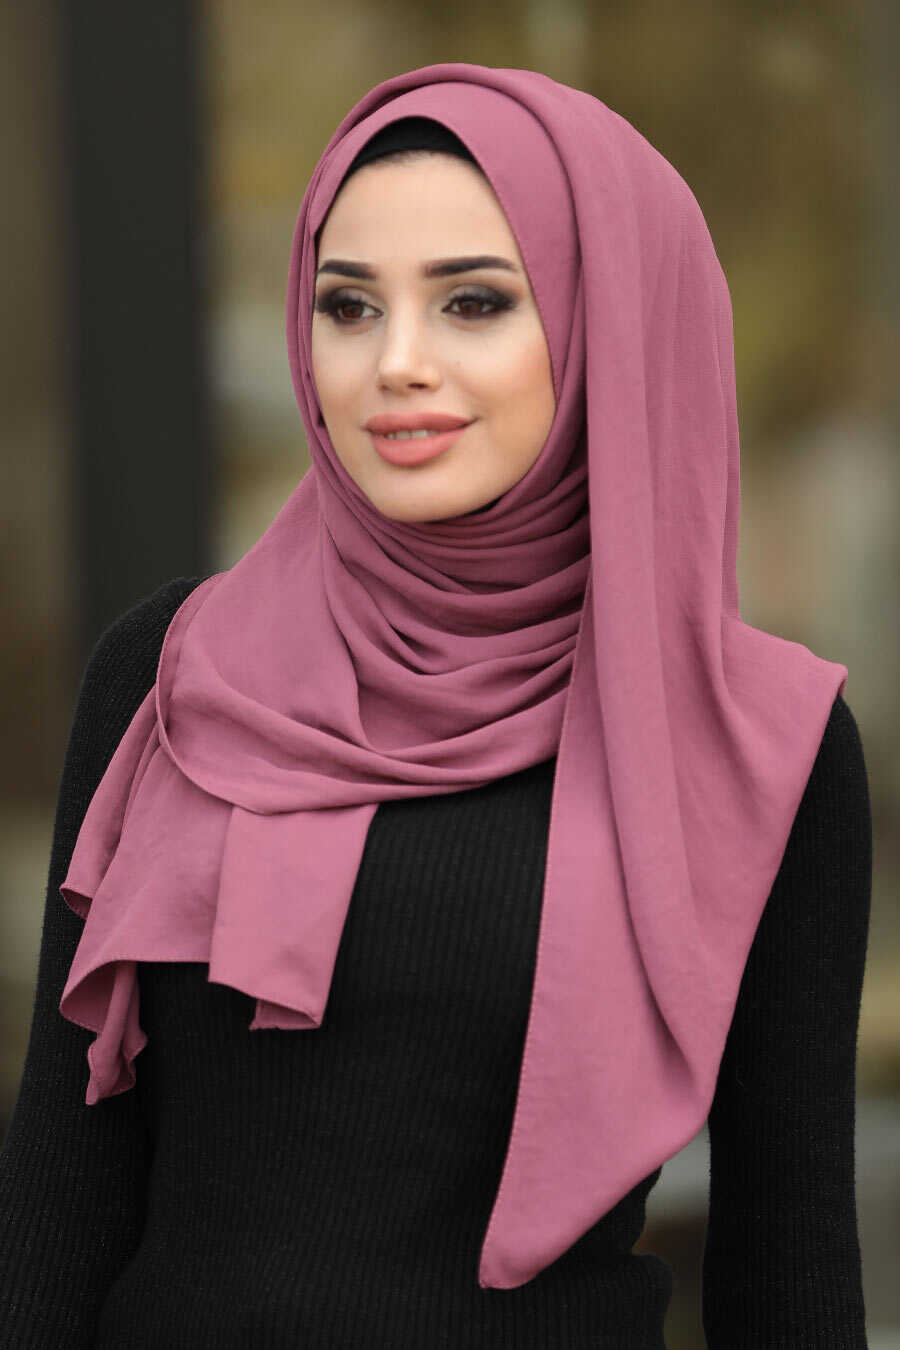 Dusty Rose Hijab Shawl 7513GK - Neva-style.com